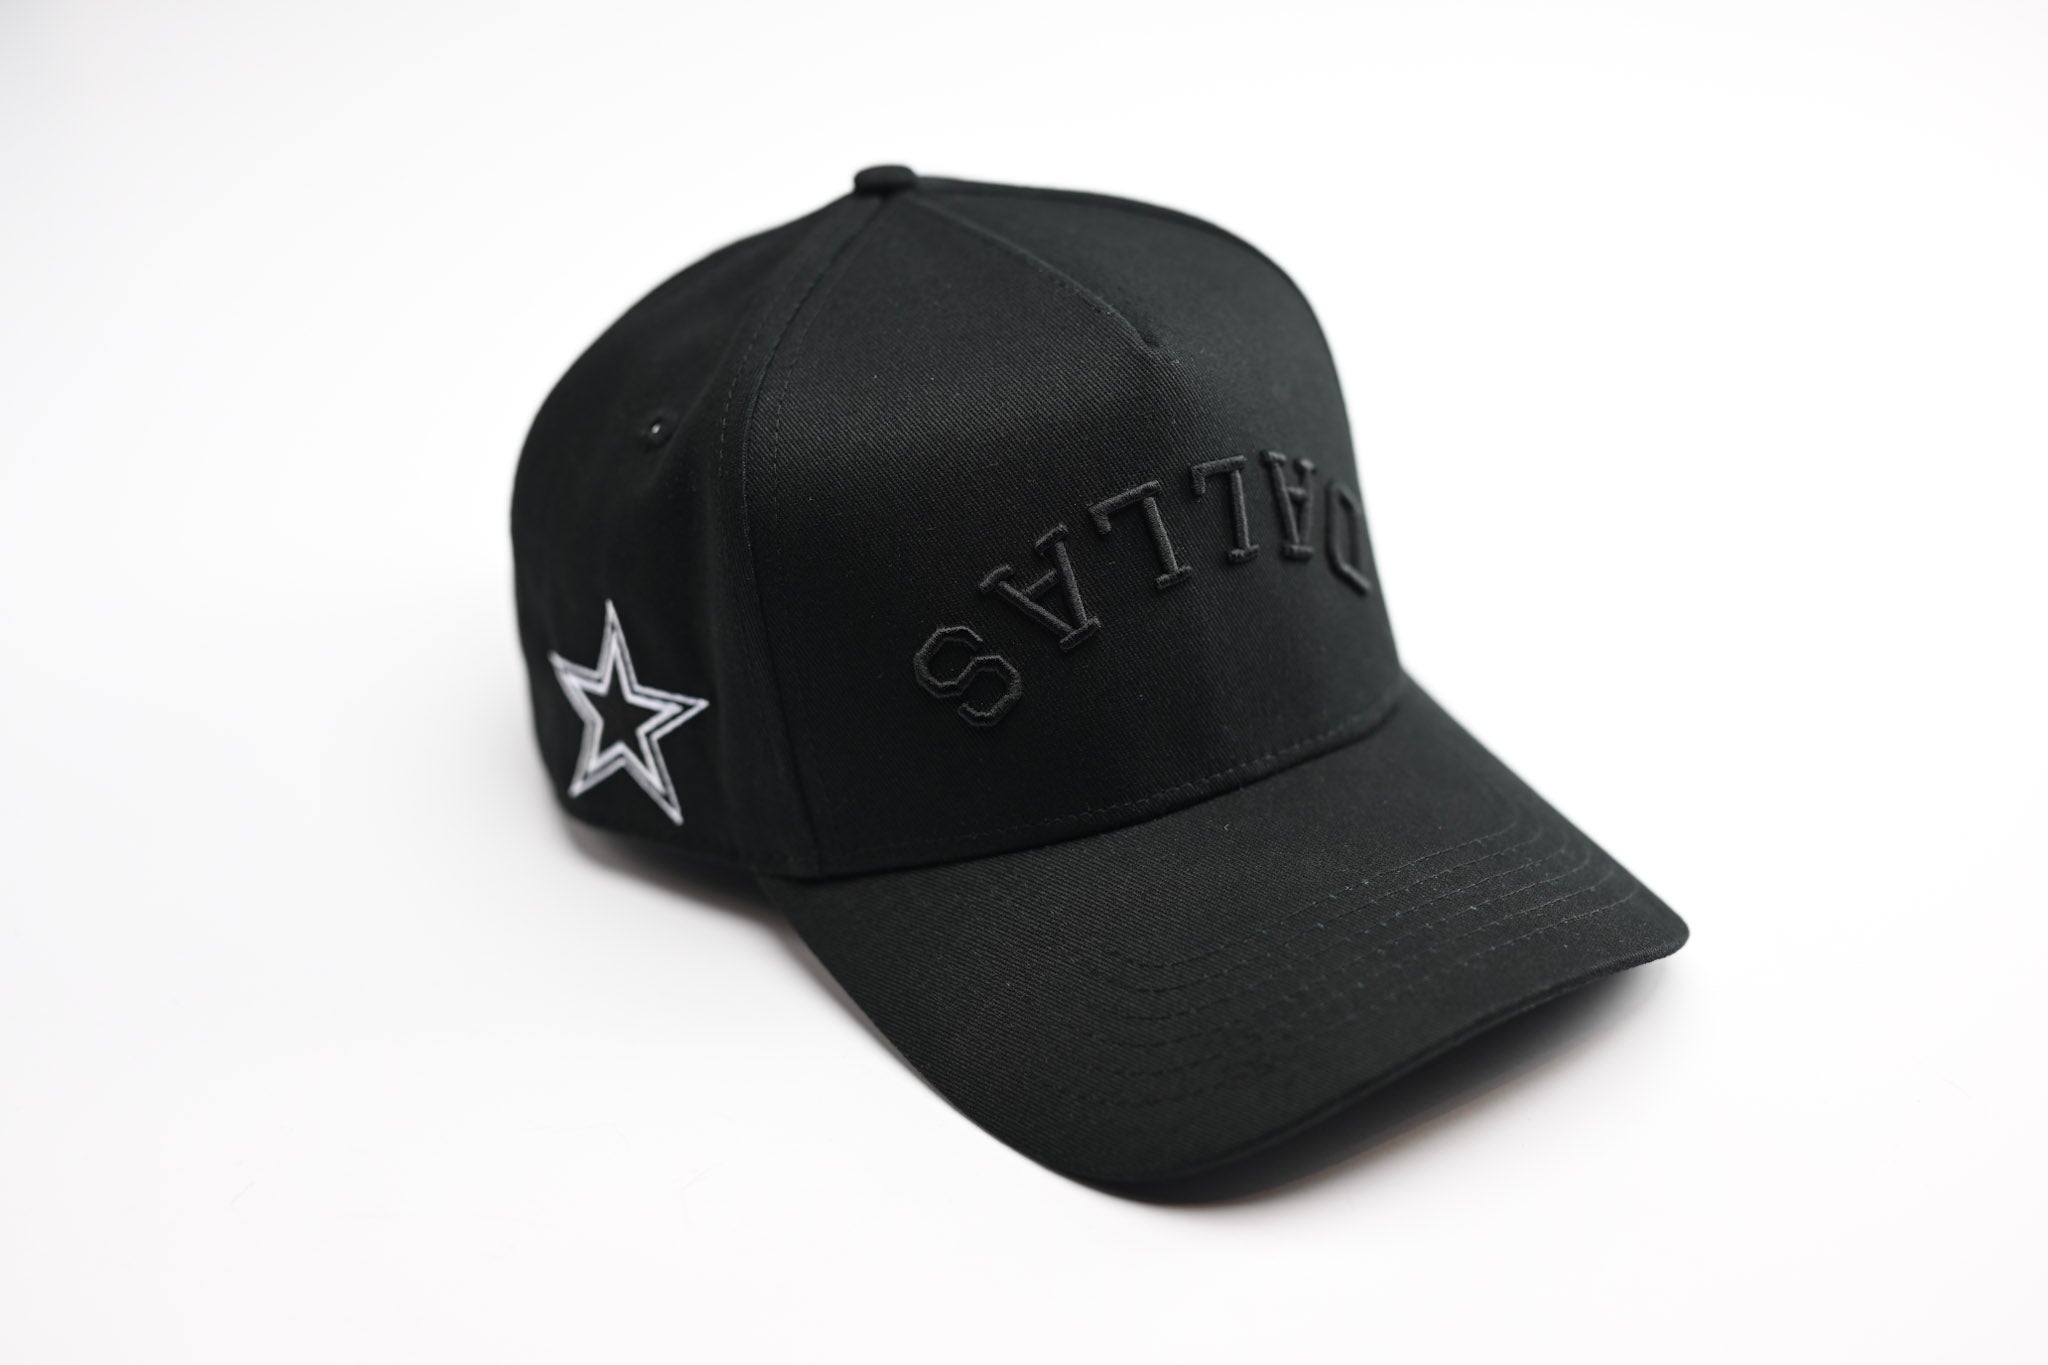 Upside Down Dallas trucker hat - Black – True Brvnd